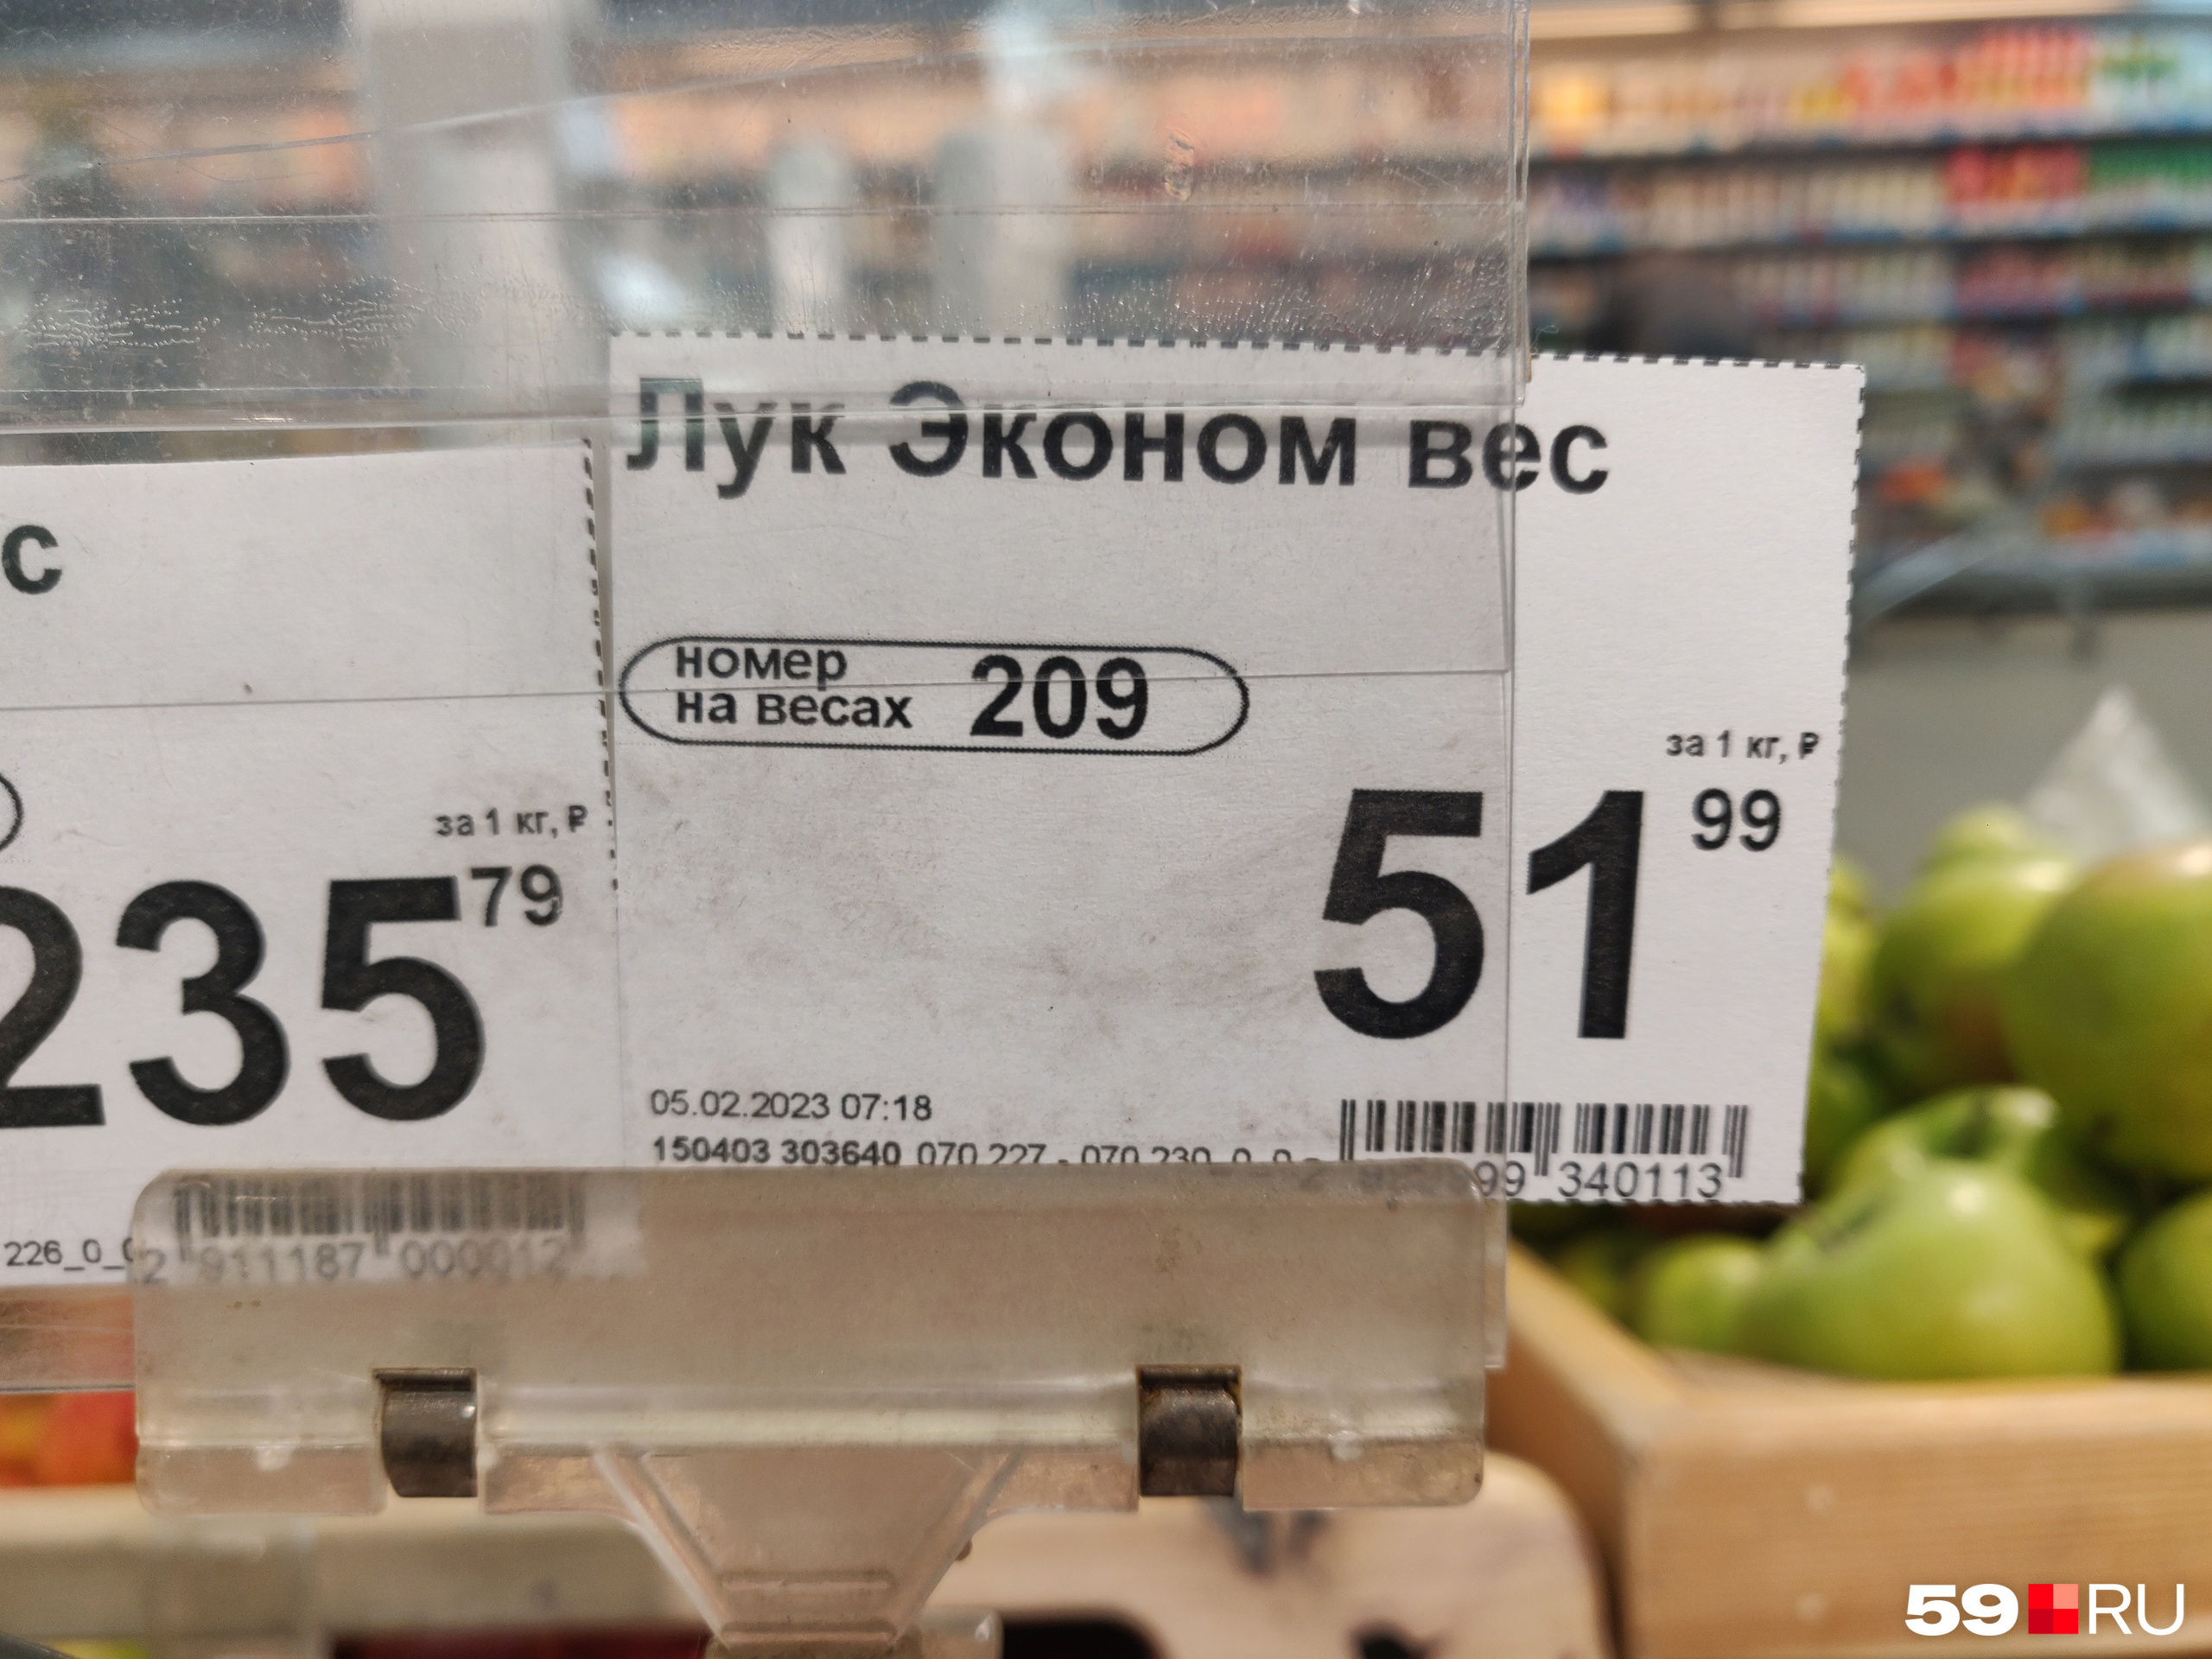 Он более чем на рубль дешевле, чем в предыдущем магазине